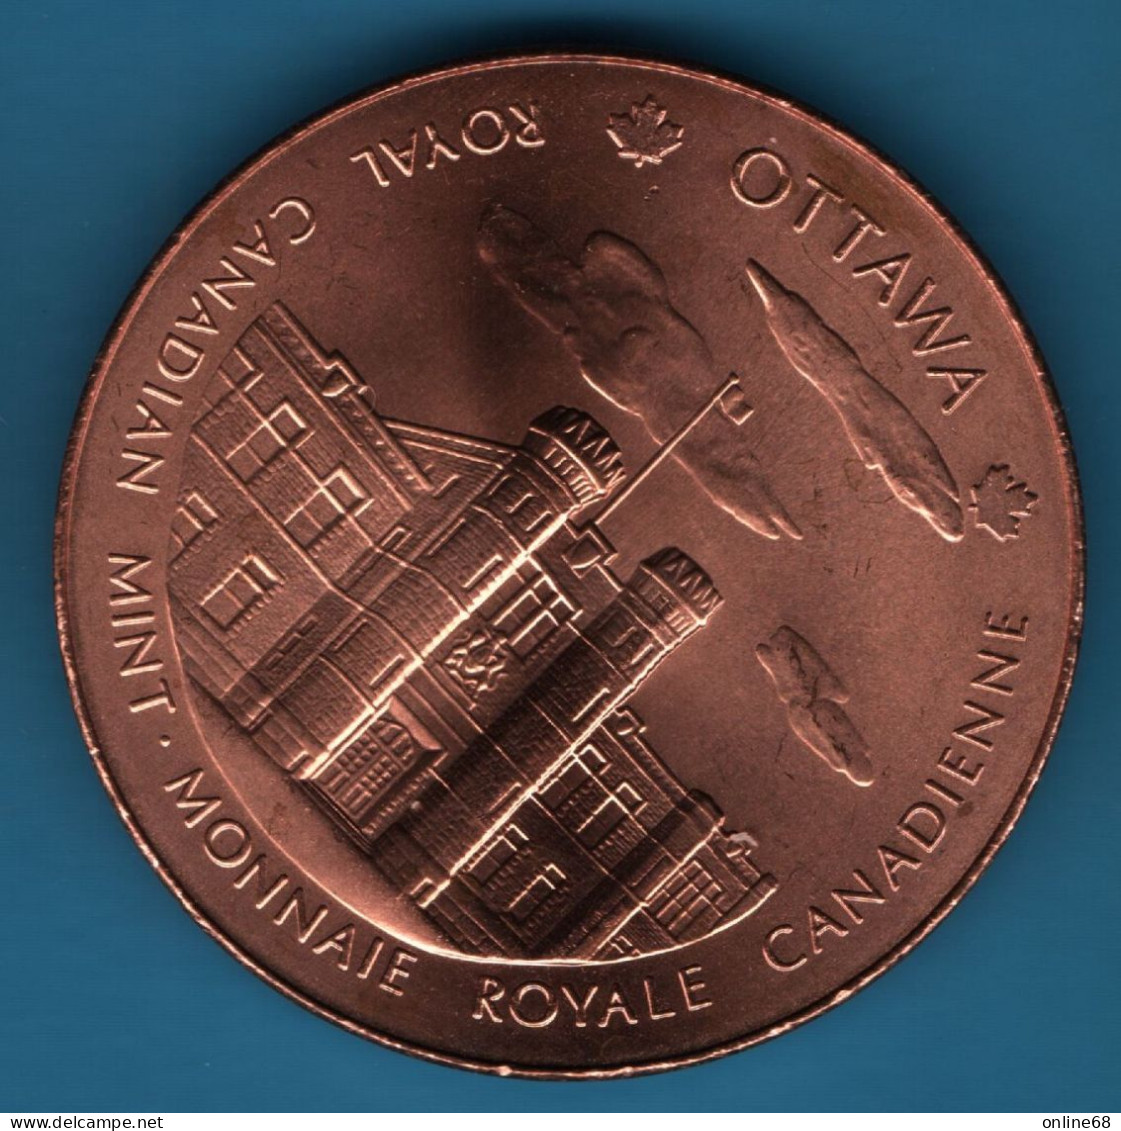 CANADA Royal Canadian Mint Medal  Ottawa & Winnipeg Mints - Firma's